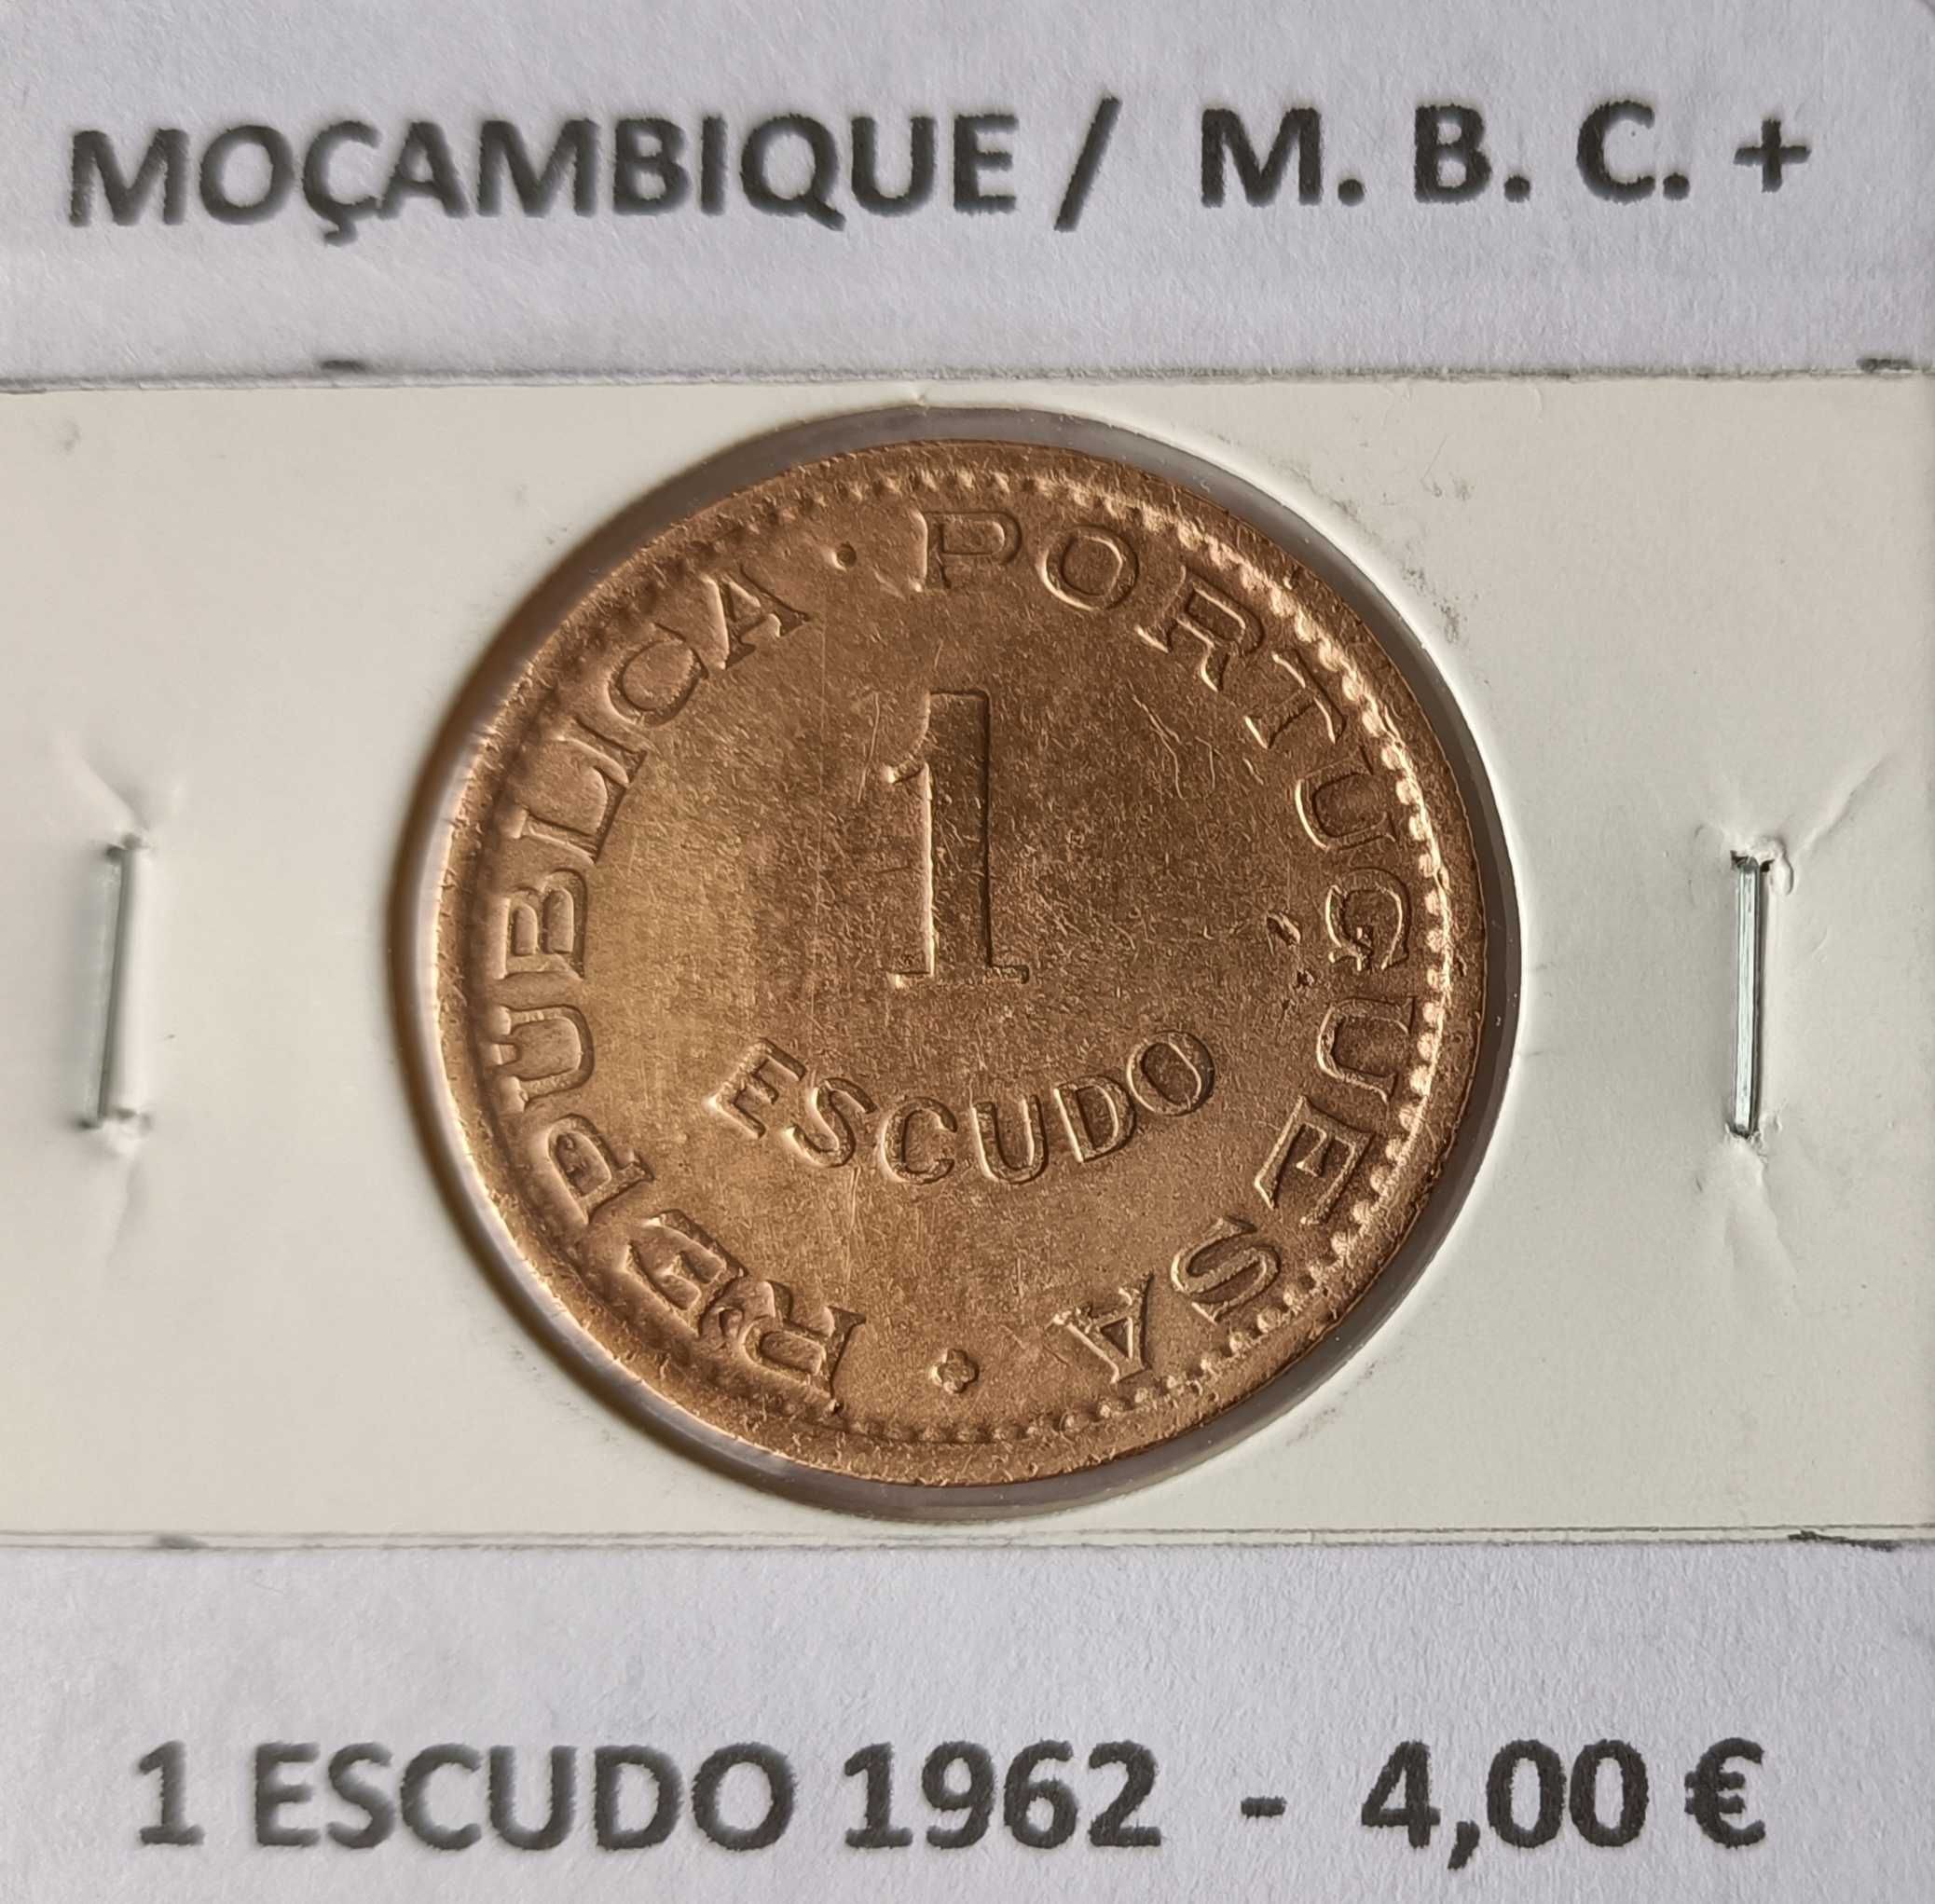 Moedas Portuguesas de 1 Escudo Circuladas na Ex Colónia de Moçambique